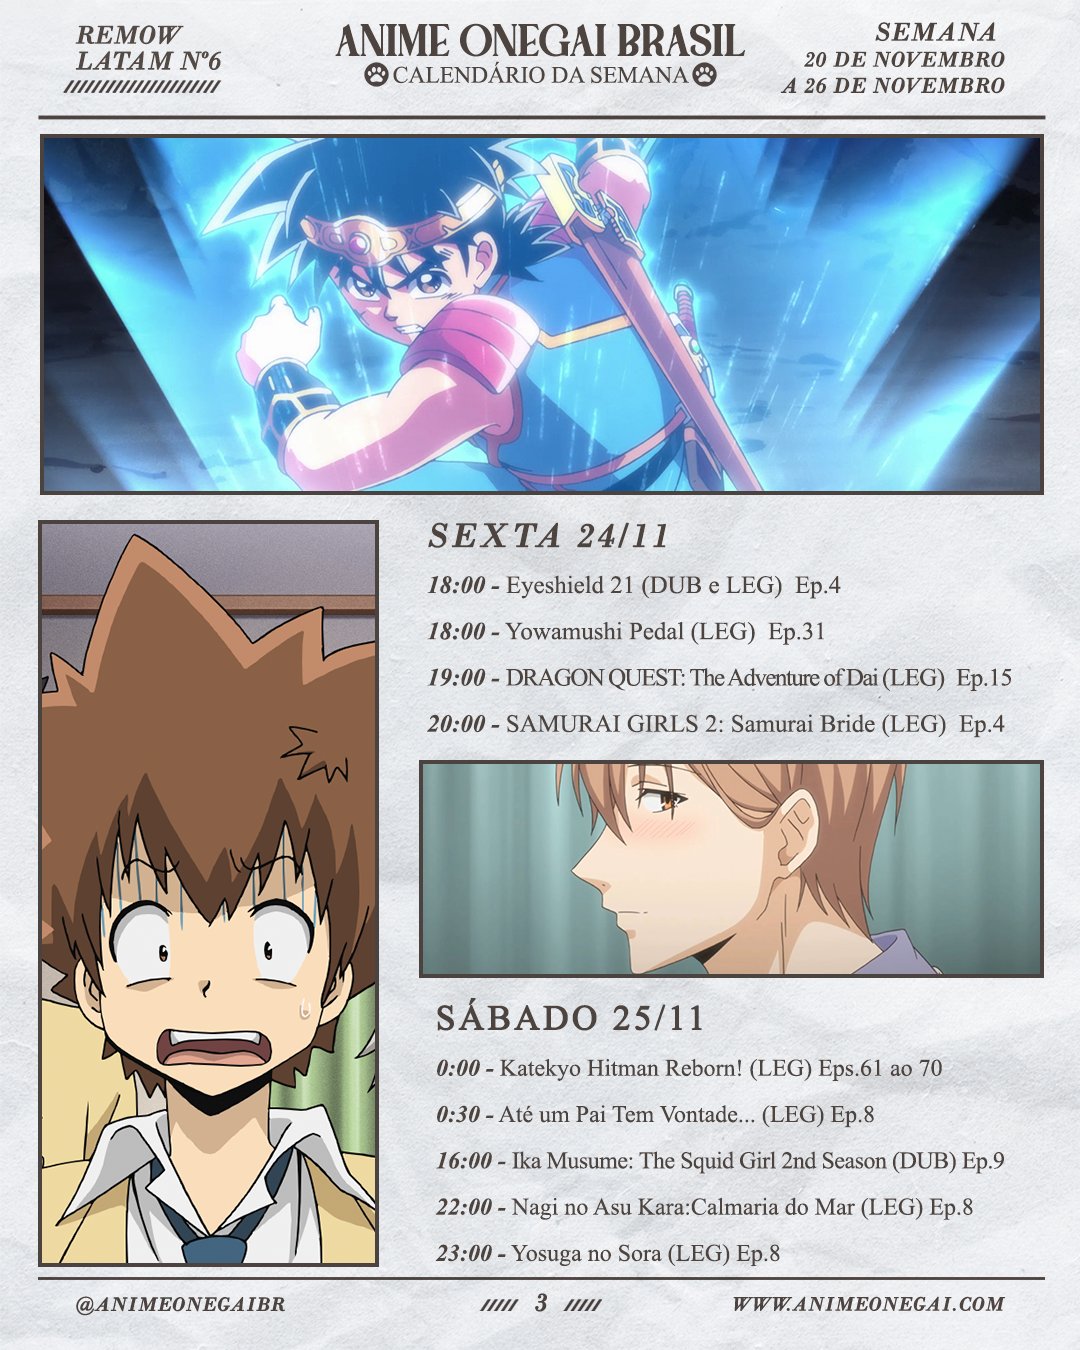 Anime Onegai Brasil on X: Prontos para mais uma semana de animes na   Para quem pediu a 2a temporada de Nyaruko, ela já  está aqui dublada. Temos ainda novos episódios de